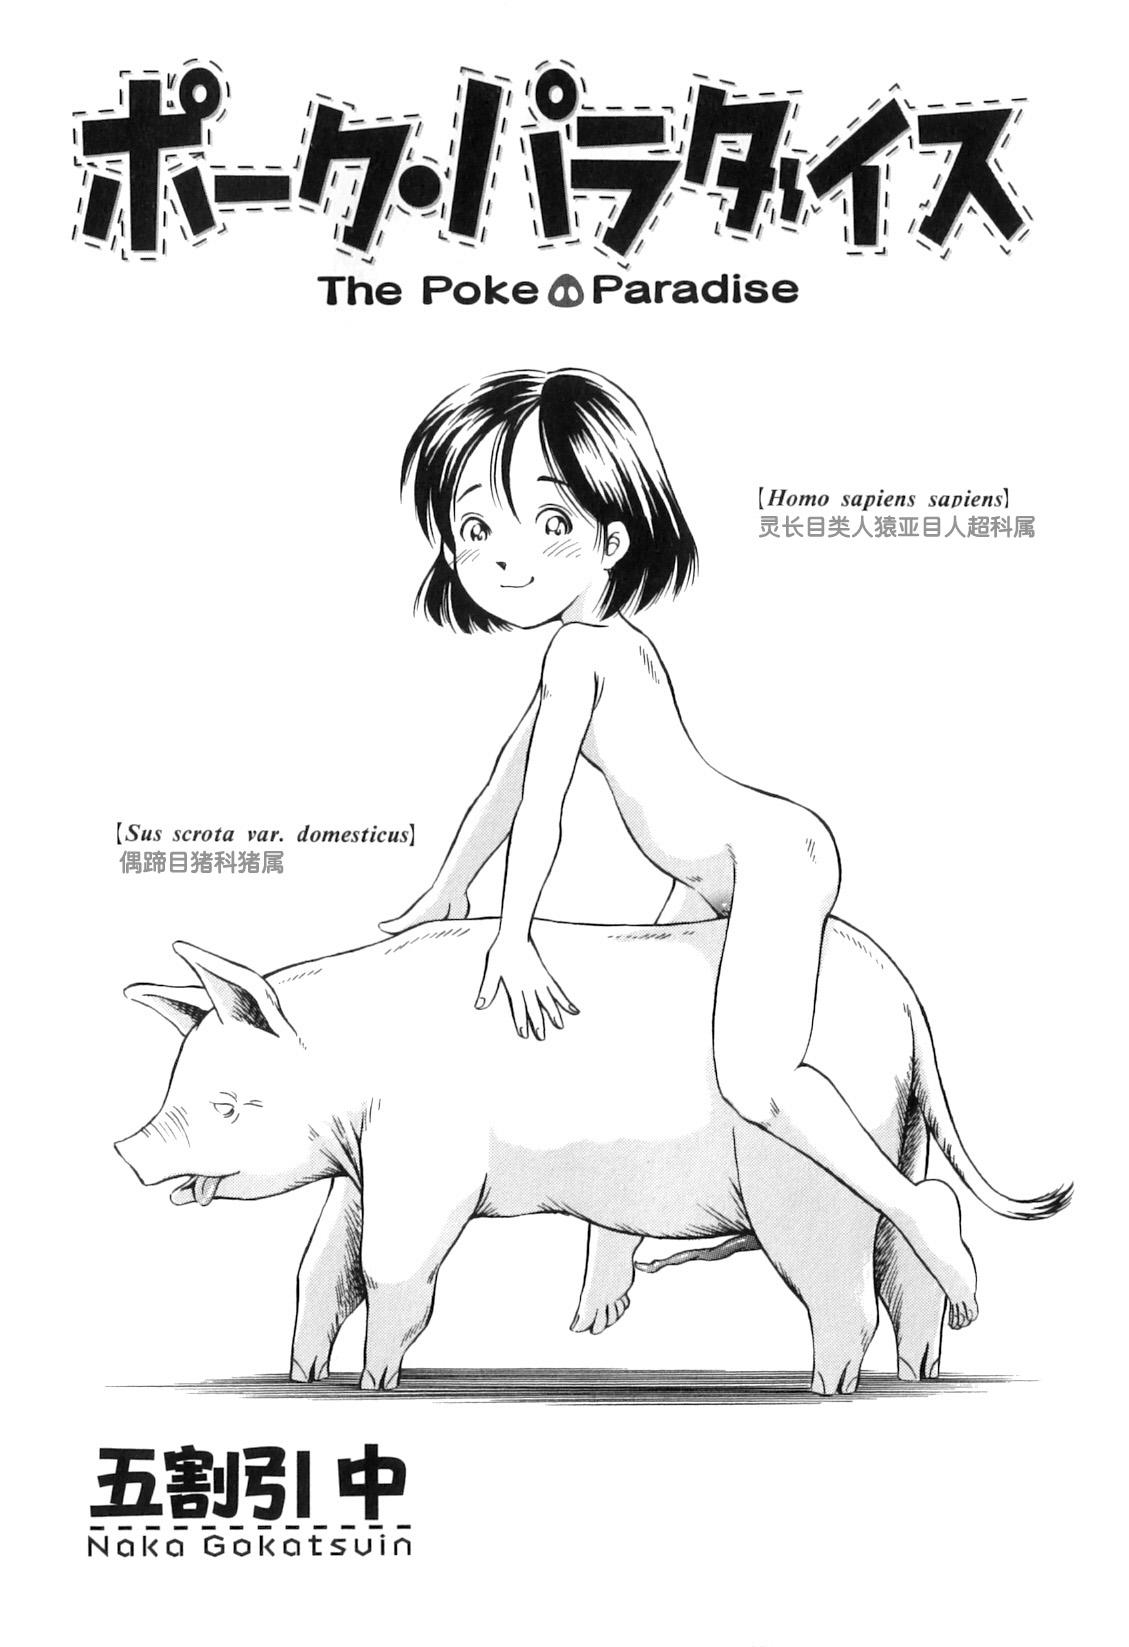 Pork Paradise 0